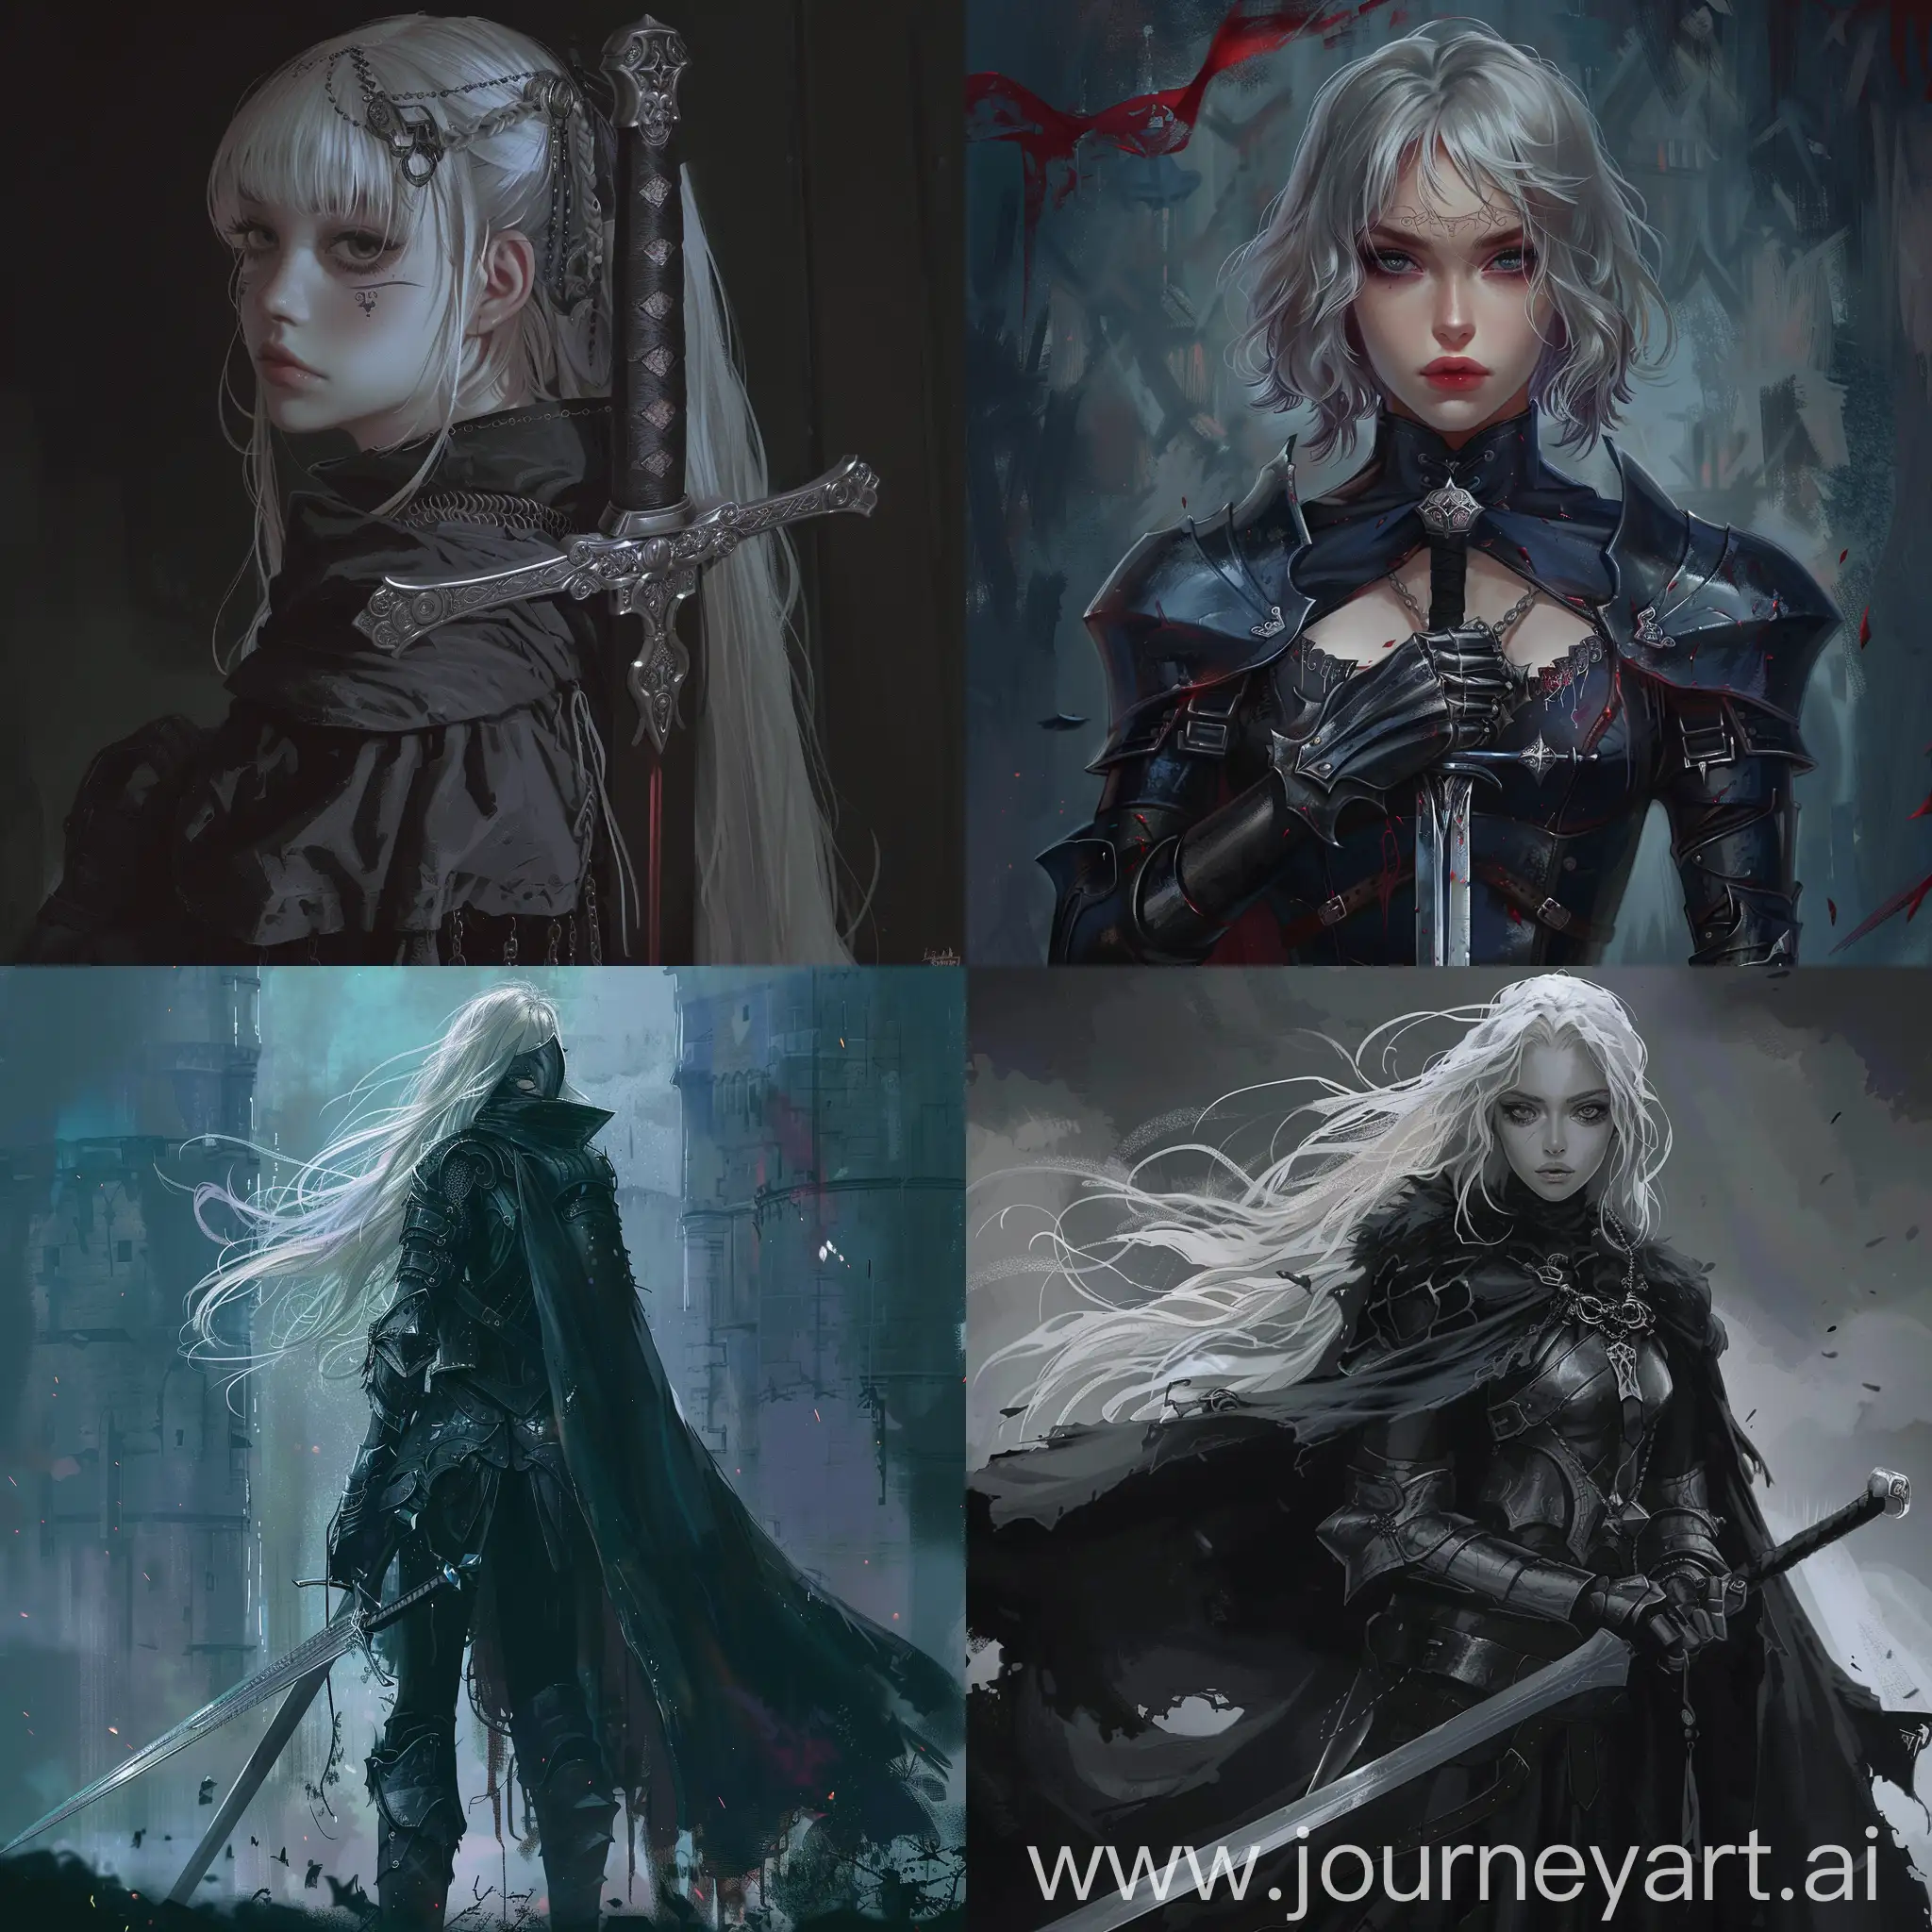 Dark fantasy, gothic, 90's anime art style, girl knight